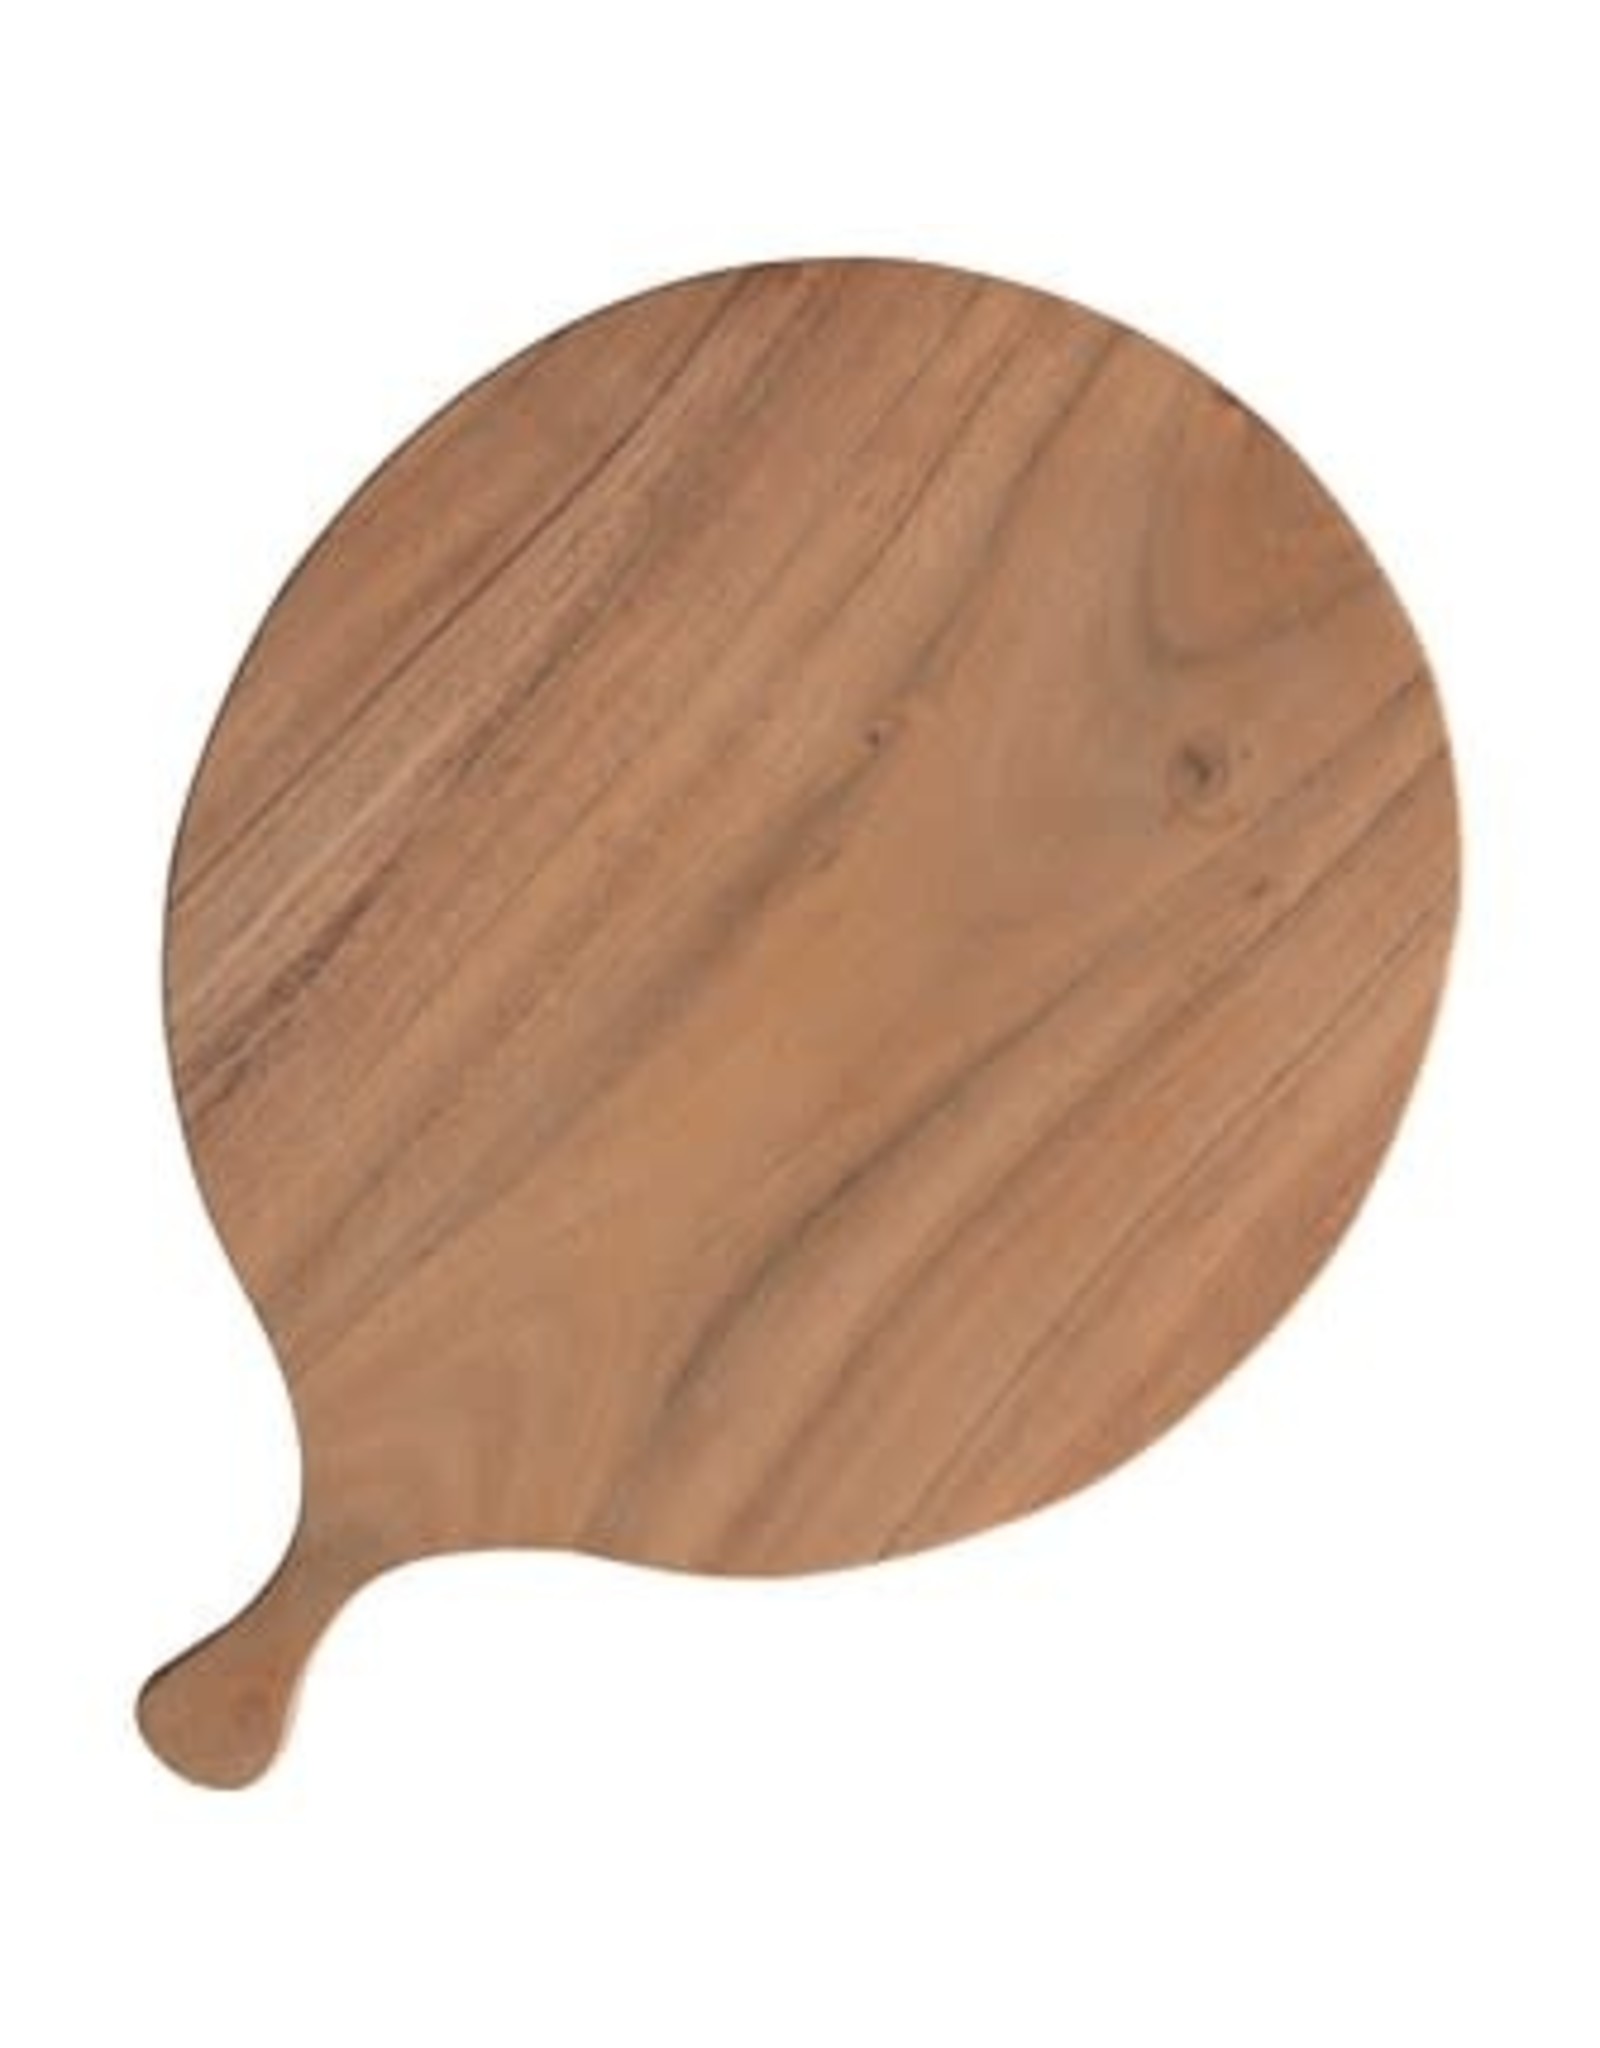 Acacia Wood Cutting Board DF3135